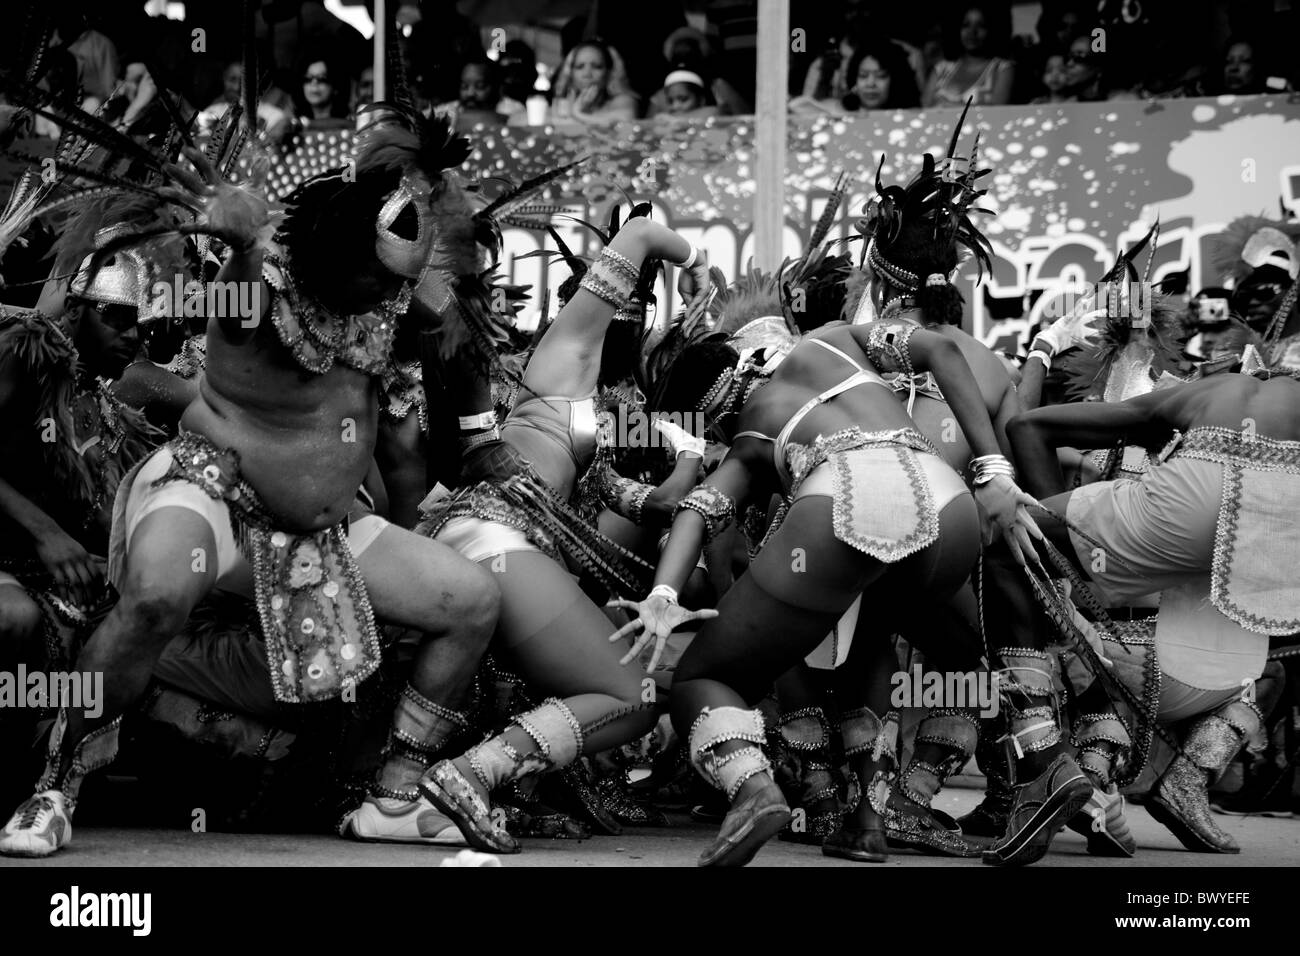 Carnaval de Trinidad writhing organes l'exécution devant des juges, noir et blanc Banque D'Images